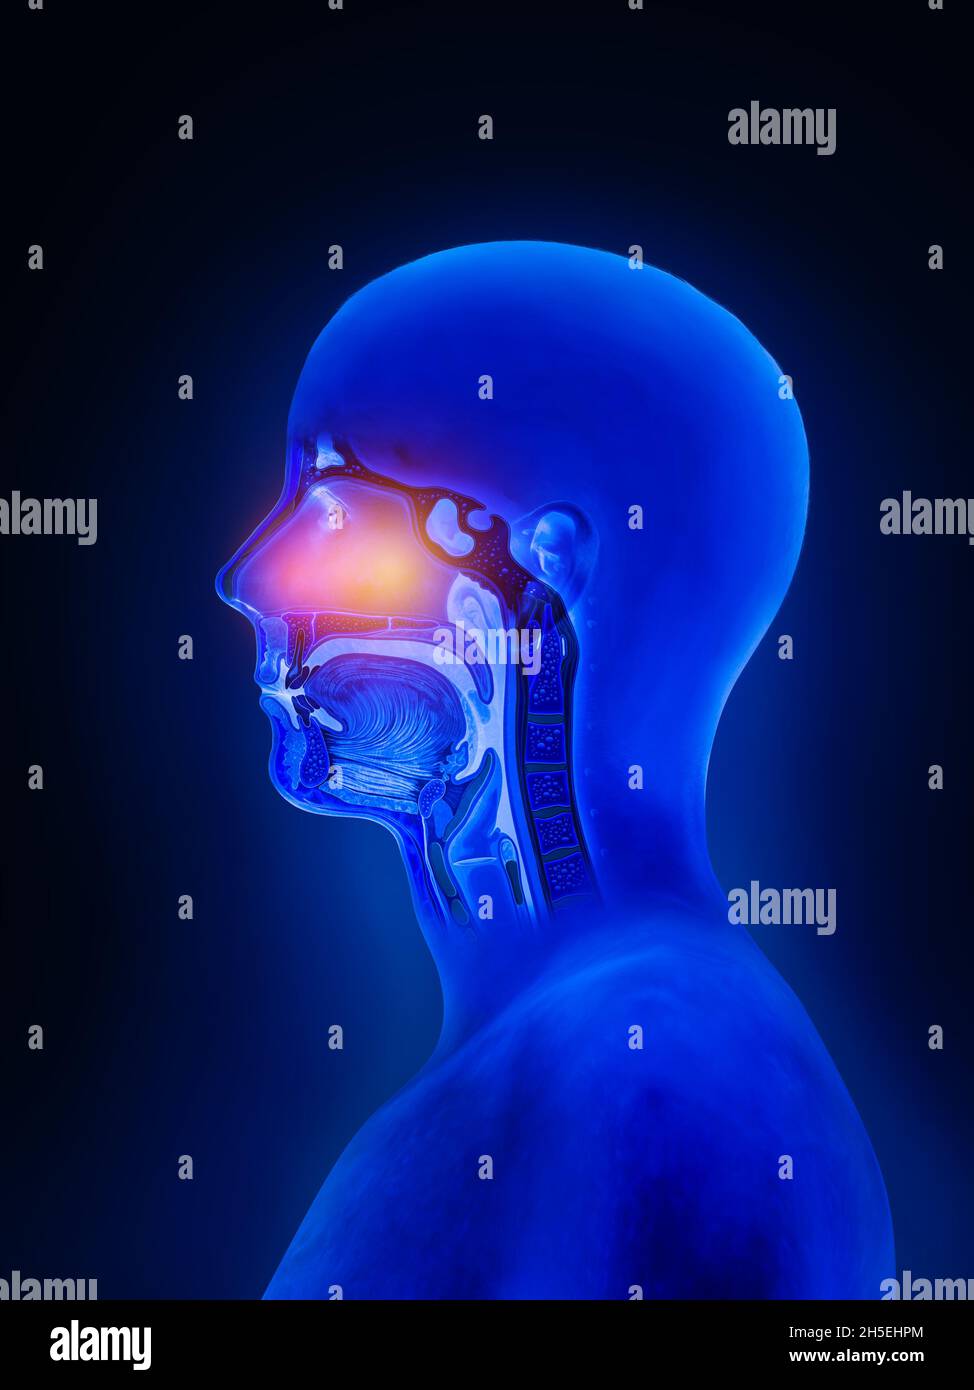 Grippe - nez complet sinus humains Anatomie, rhumes, allergies, anatomie nasale, grippe, sinusite, traitement des voies respiratoires supérieures, rendu 3d, rapport d'illustration Banque D'Images